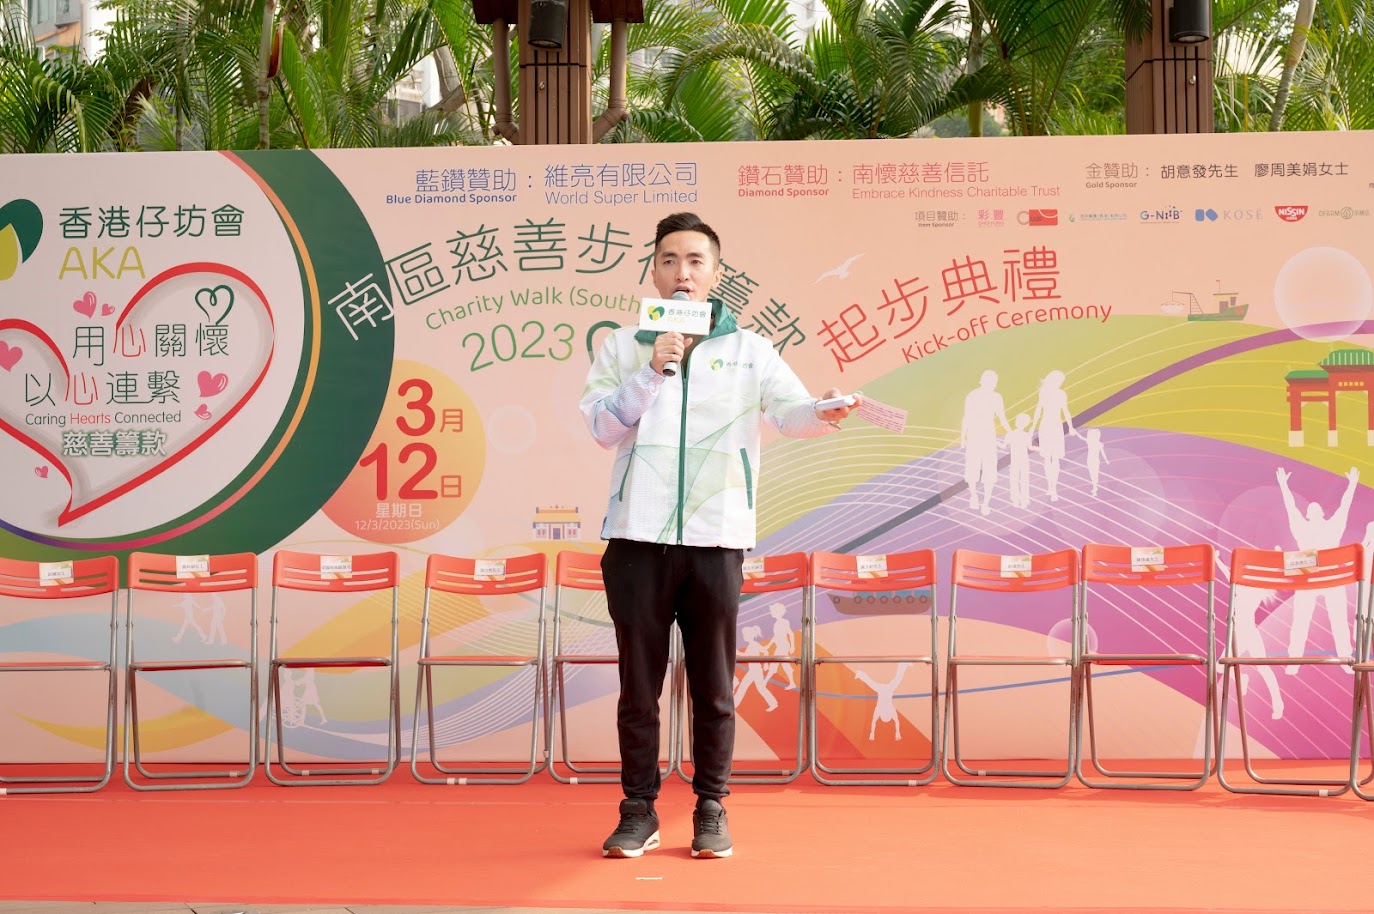 MC David Wong 黃迪瑋司儀工作紀錄: 「用心關懷．以心連繫」南區慈善步行籌款2023活動主持/司儀